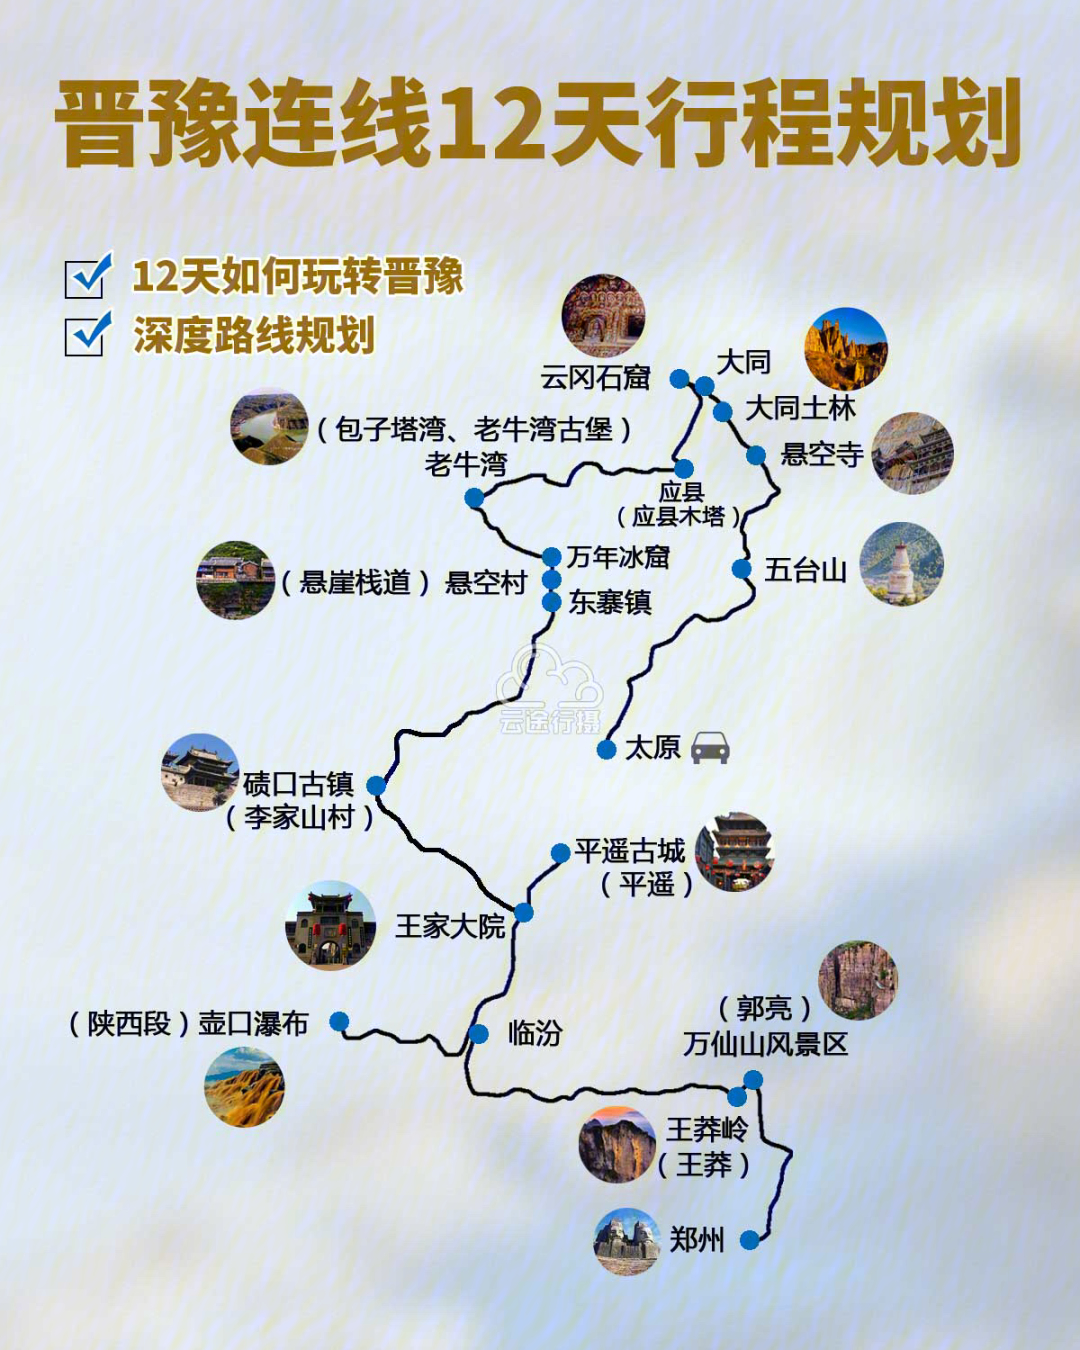 979797晋豫连线12日深度旅游攻略线路图(原创),打卡网红景点